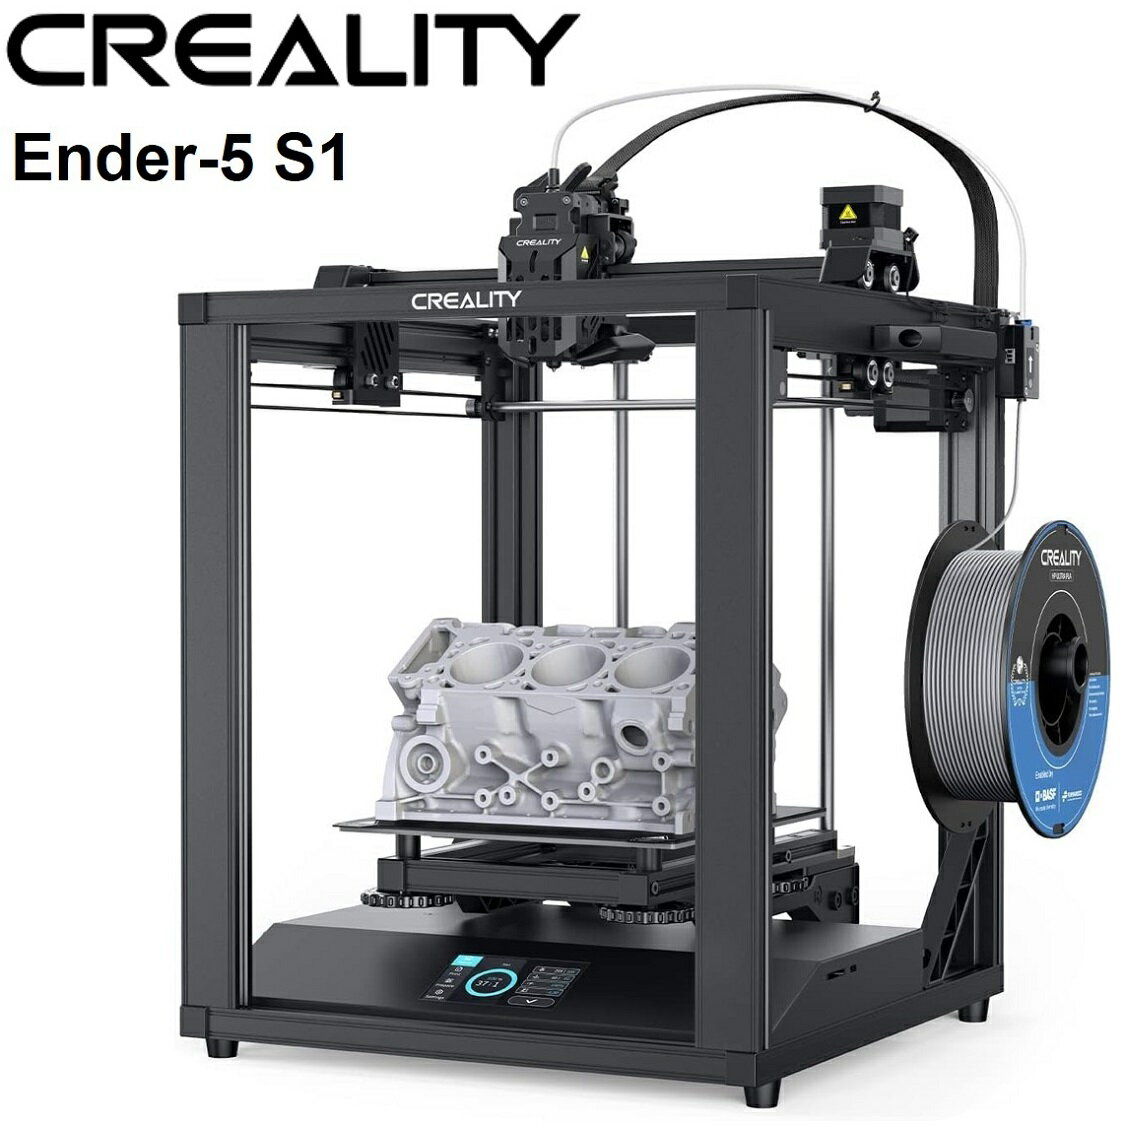 【正規代理】Creality Ender 5 S1 3Dプリンター 250mm/s高速 タッチパネル CRタッチ自動水平調整 300℃ 高温ノズル 直接押出機 プリンター デュアルZ軸 高精度 停電復帰 静音 DIY用品 プリンターfdm